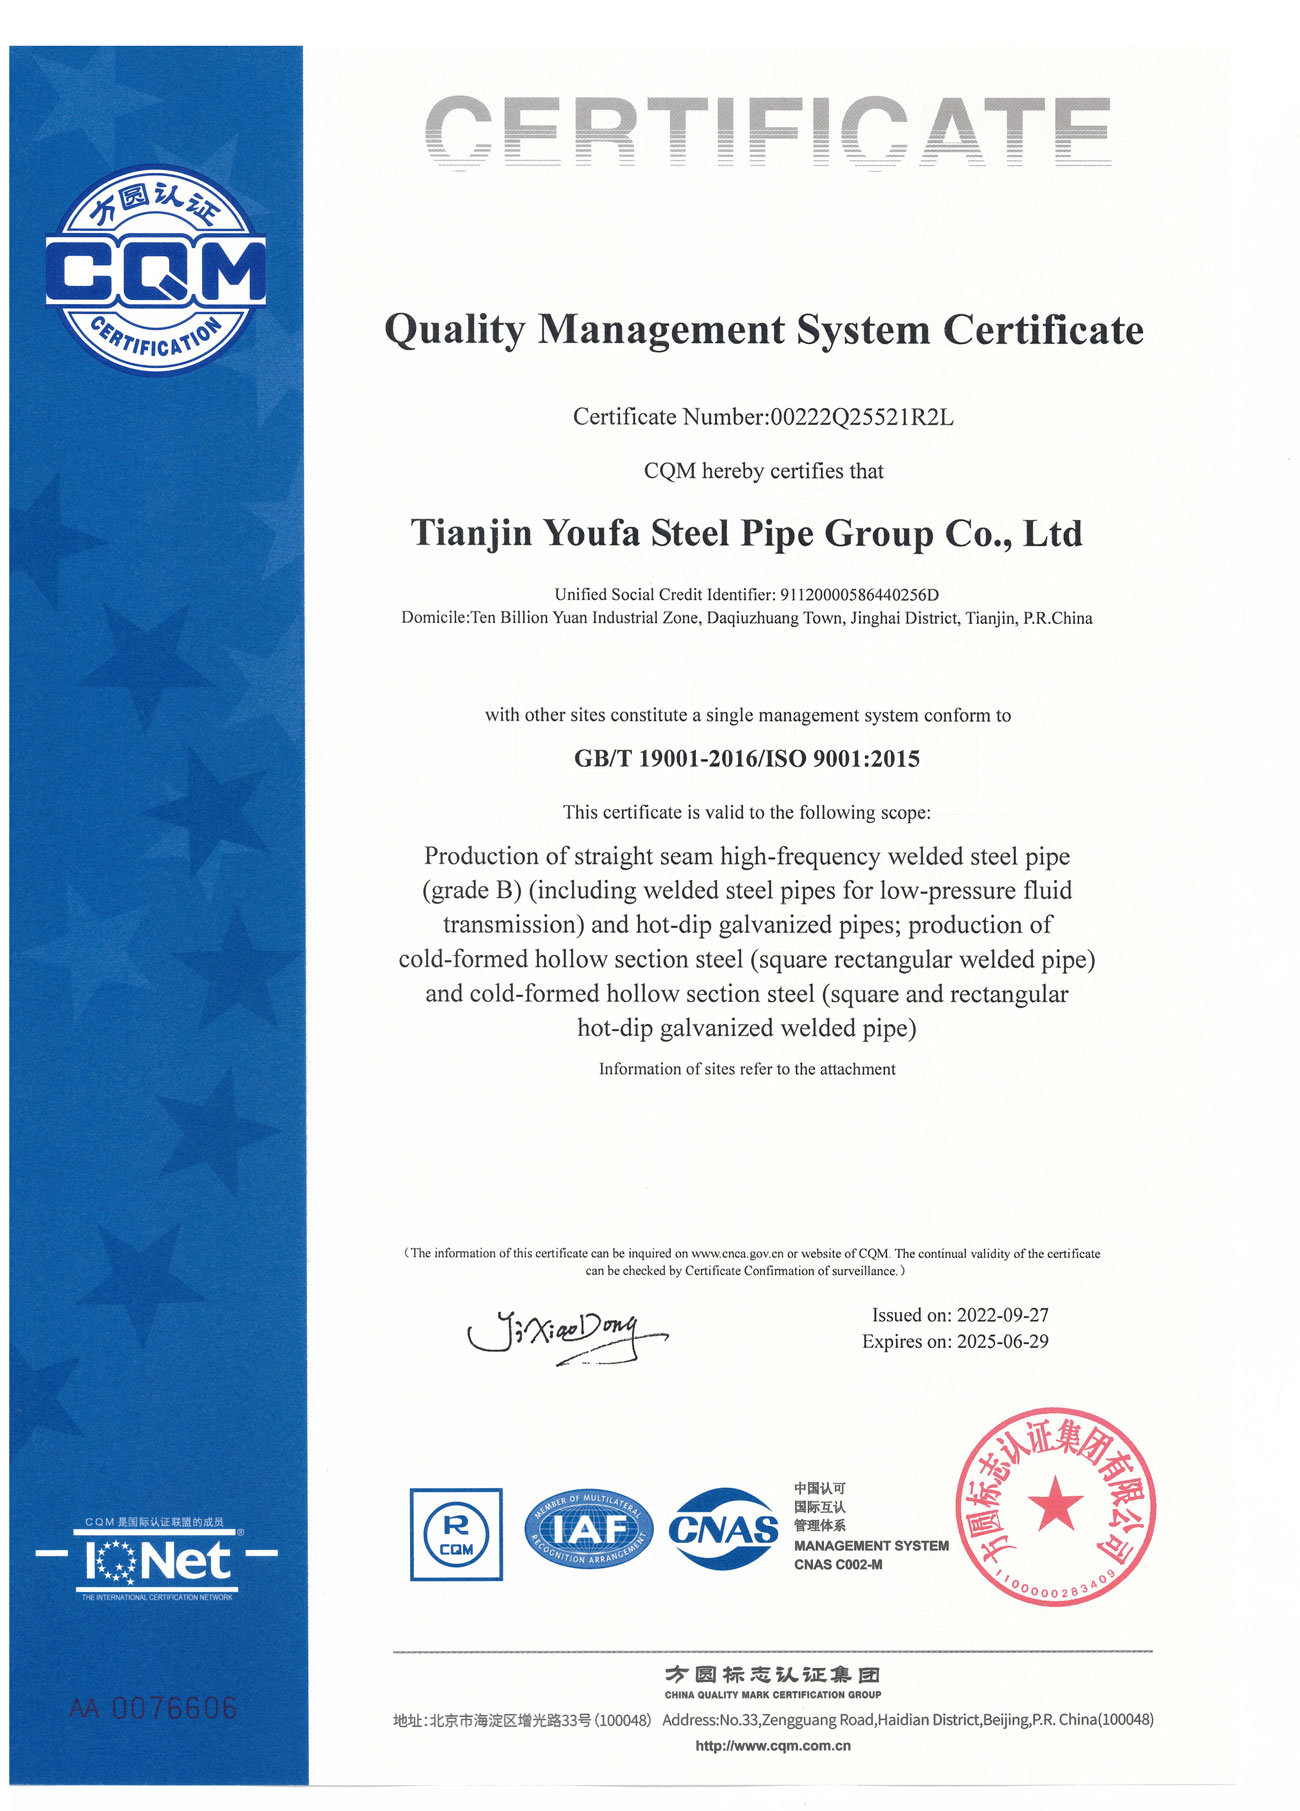 ISO9001-GBT190012.jpg